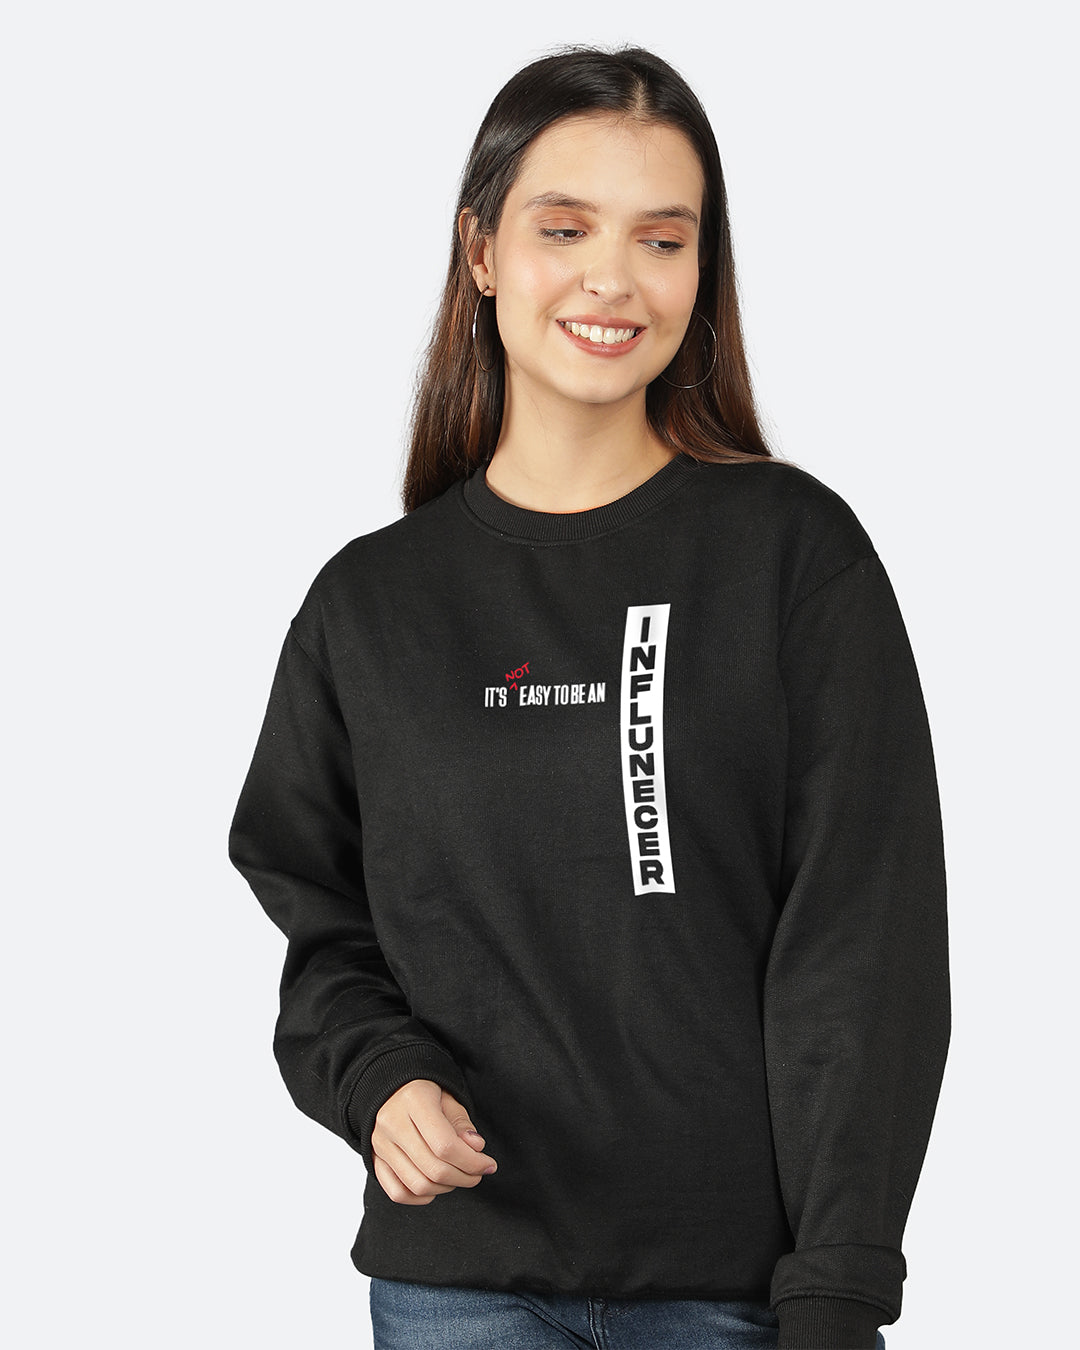 Influencer Women Sweatshirt